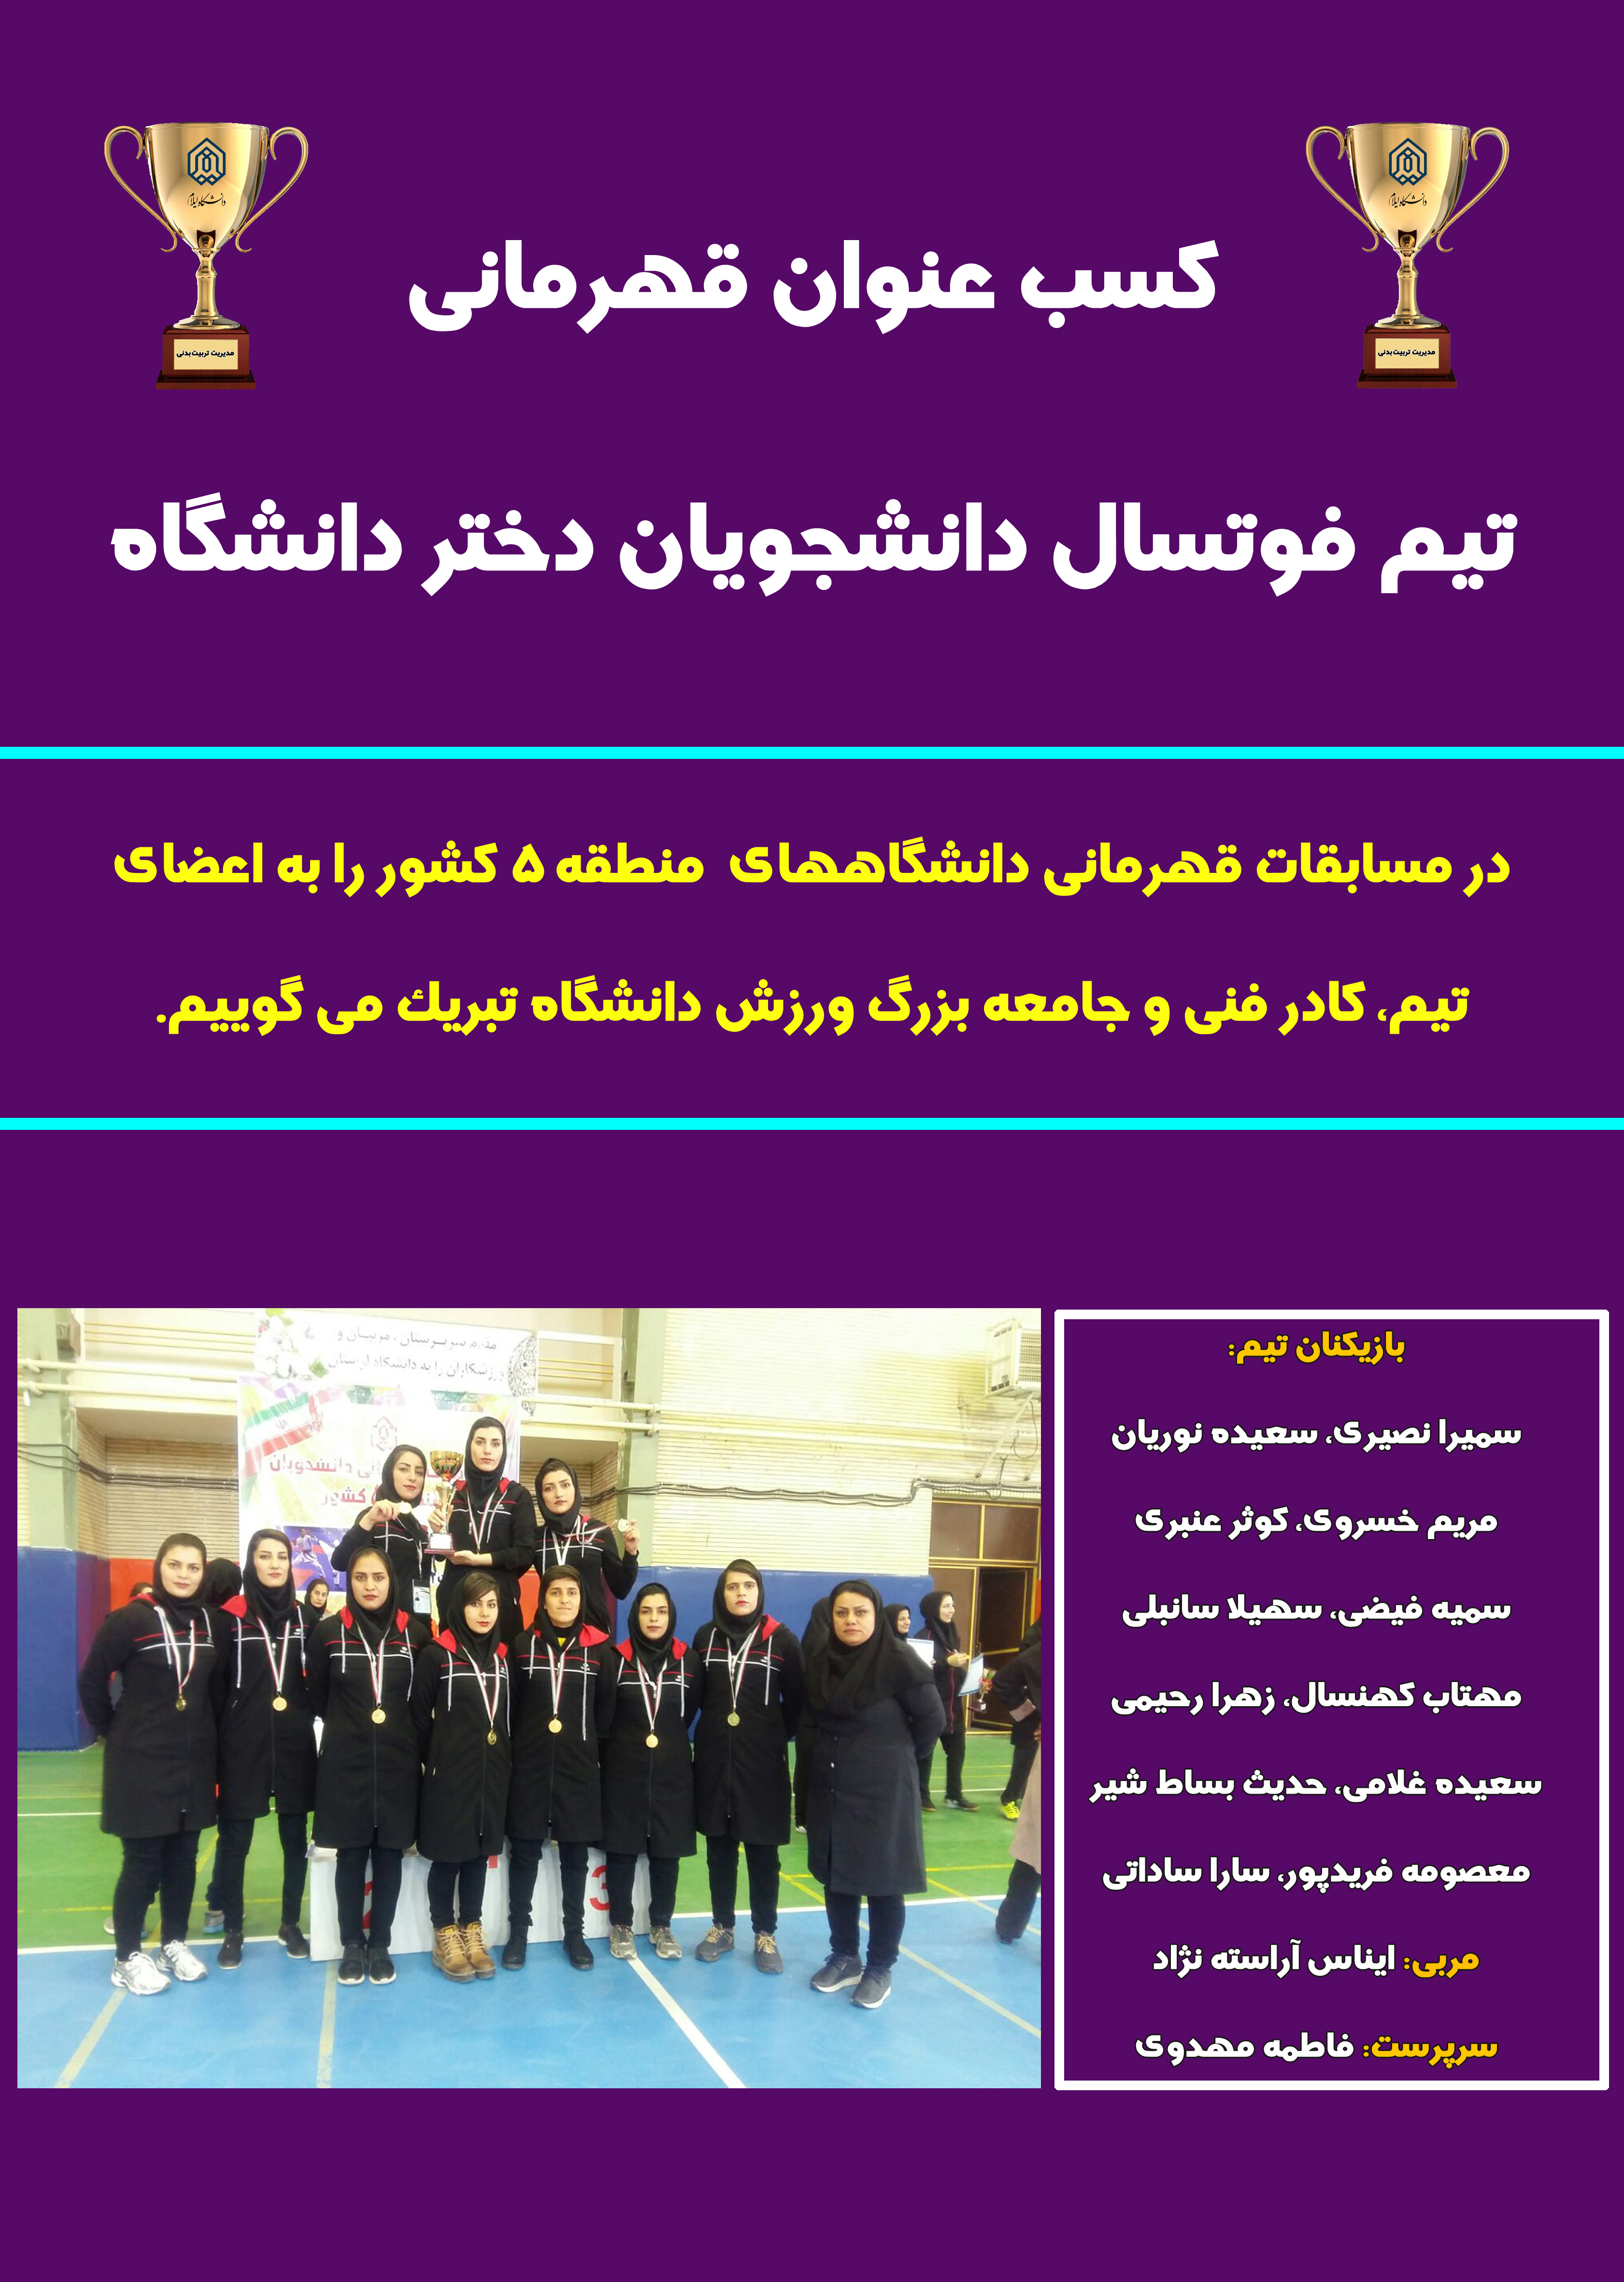 قهرماني تيم فوتسال دانشجويان دختر دانشگاه در مسابقات قهرماني دانشگاه هاي منطقه 5 کشور